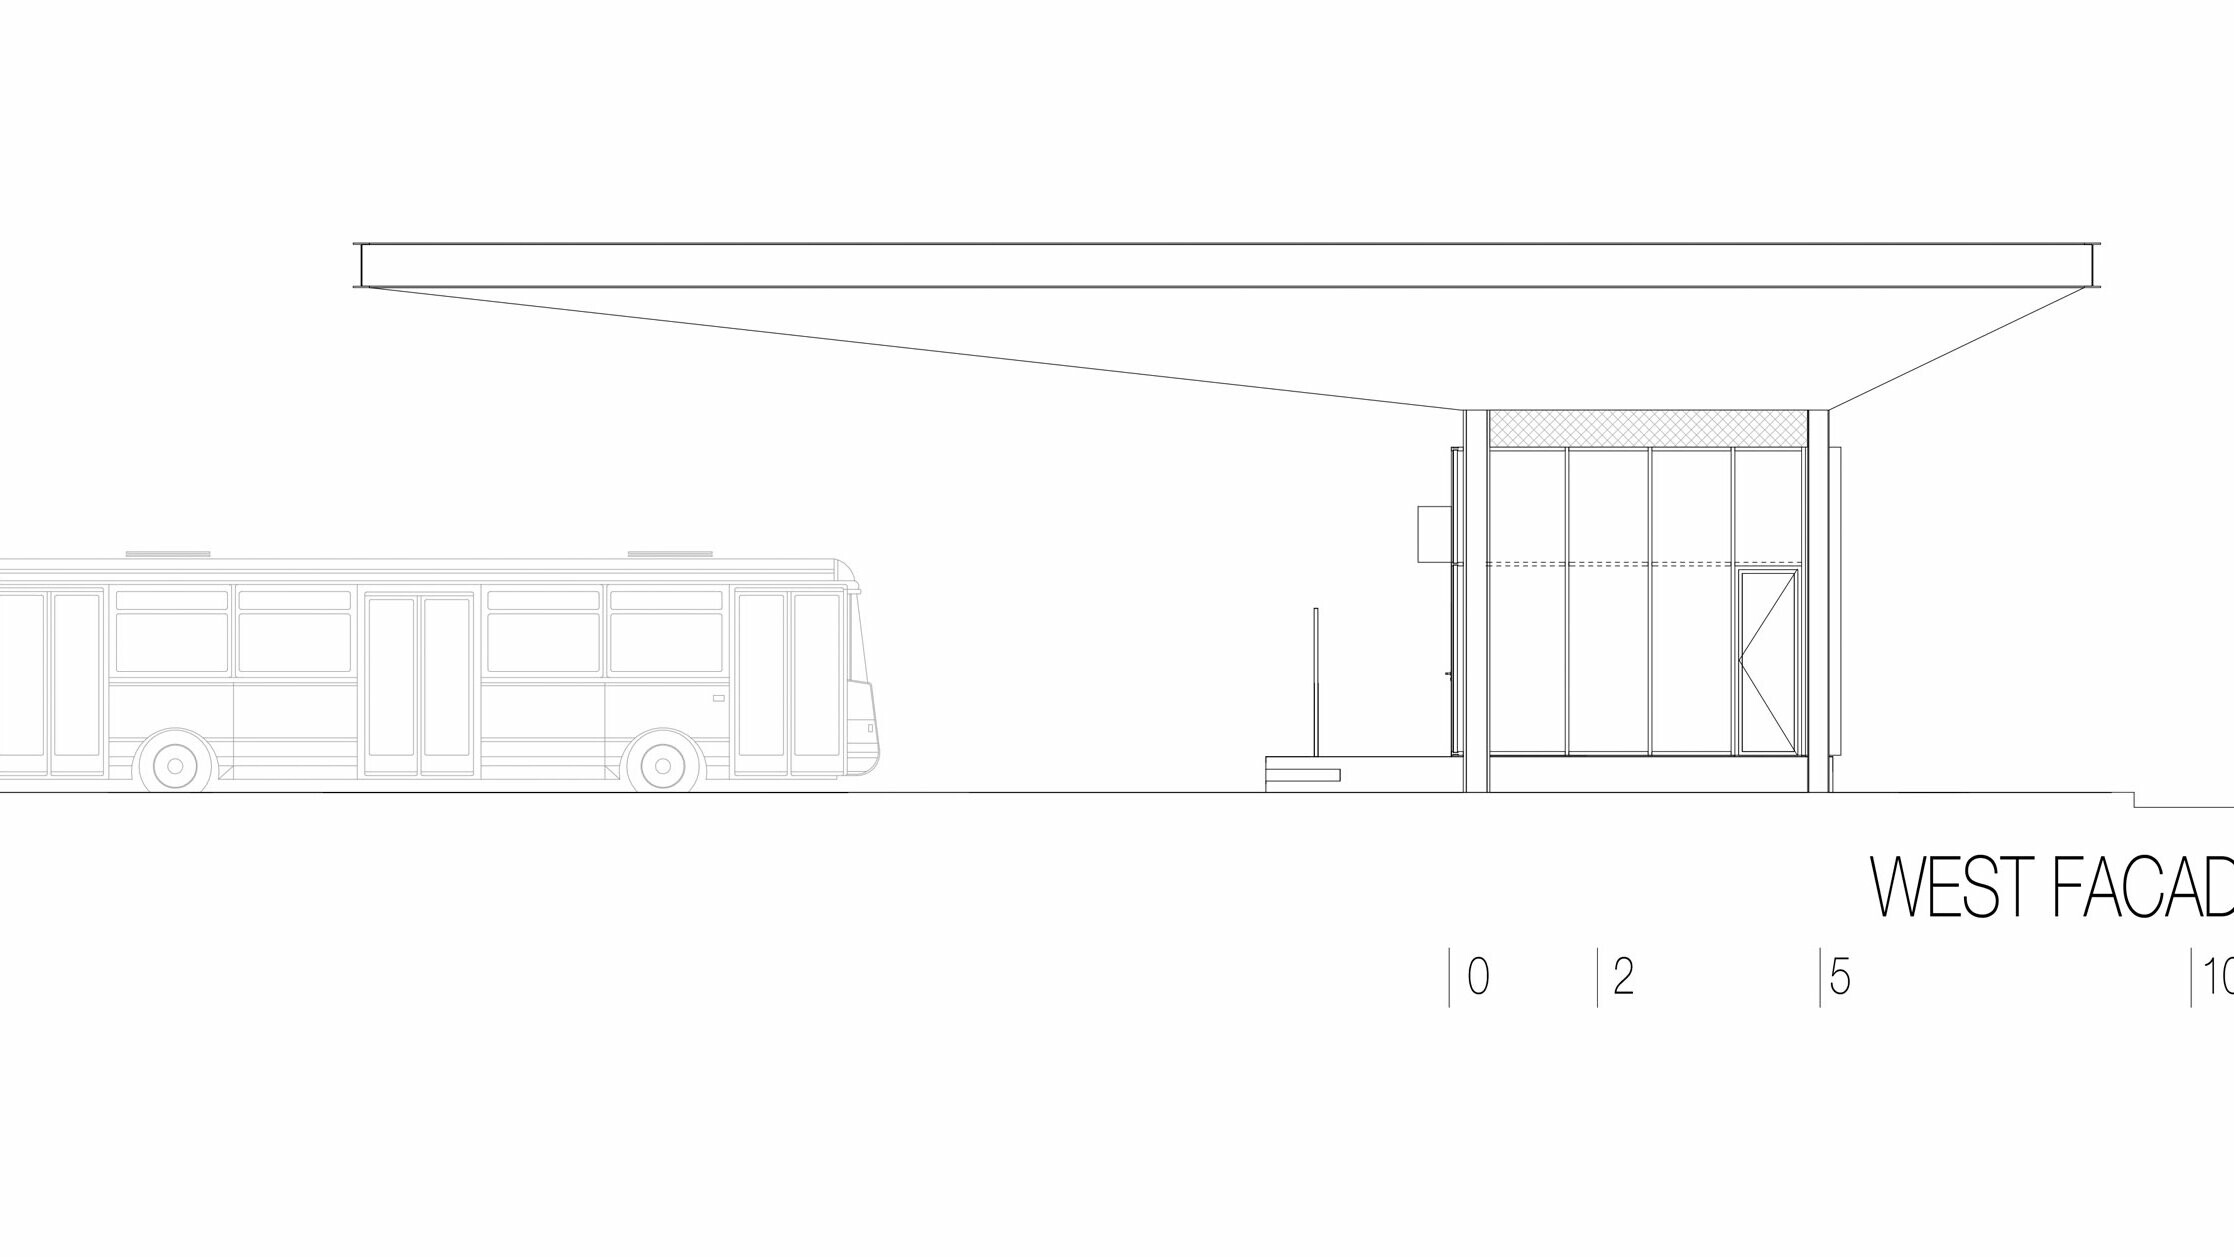 Na nacrtu se nalazi zapadno pročelje autobusne postaje „Autobusni kolodvor Slavonski Brod“ u Hrvatskoj. Prikaz naglašava dugi horizontalni bijeli Prefalz krov tvrtke PREFA koji strši iznad okolnog prostora. Na desnoj strani nacrta vidljiva je pravokutna struktura s velikim staklenim površinama i jasnim linijama. Na lijevoj se strani nalazi autobus, što daje predodžbu dimenzija postaje u odnosu na vozilo. Zapadno pročelje naglašava modernu i funkcionalnu arhitekturu postaje, koja zahvaljujući spoju stakla i aluminija stvara svjetlu i privlačnu atmosferu.